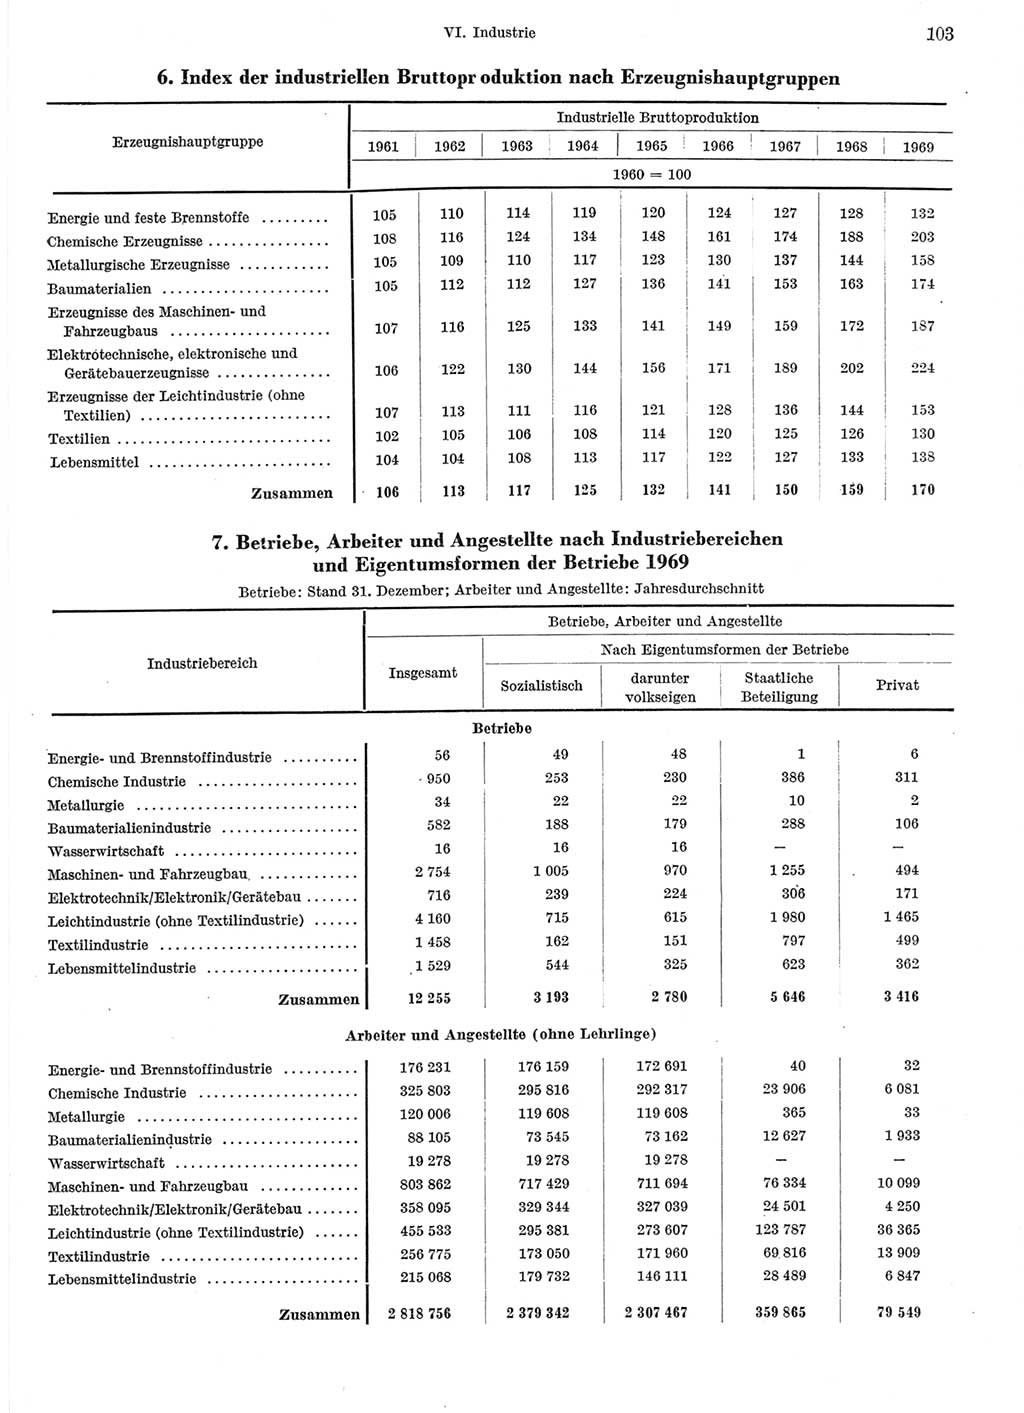 Statistisches Jahrbuch der Deutschen Demokratischen Republik (DDR) 1970, Seite 103 (Stat. Jb. DDR 1970, S. 103)